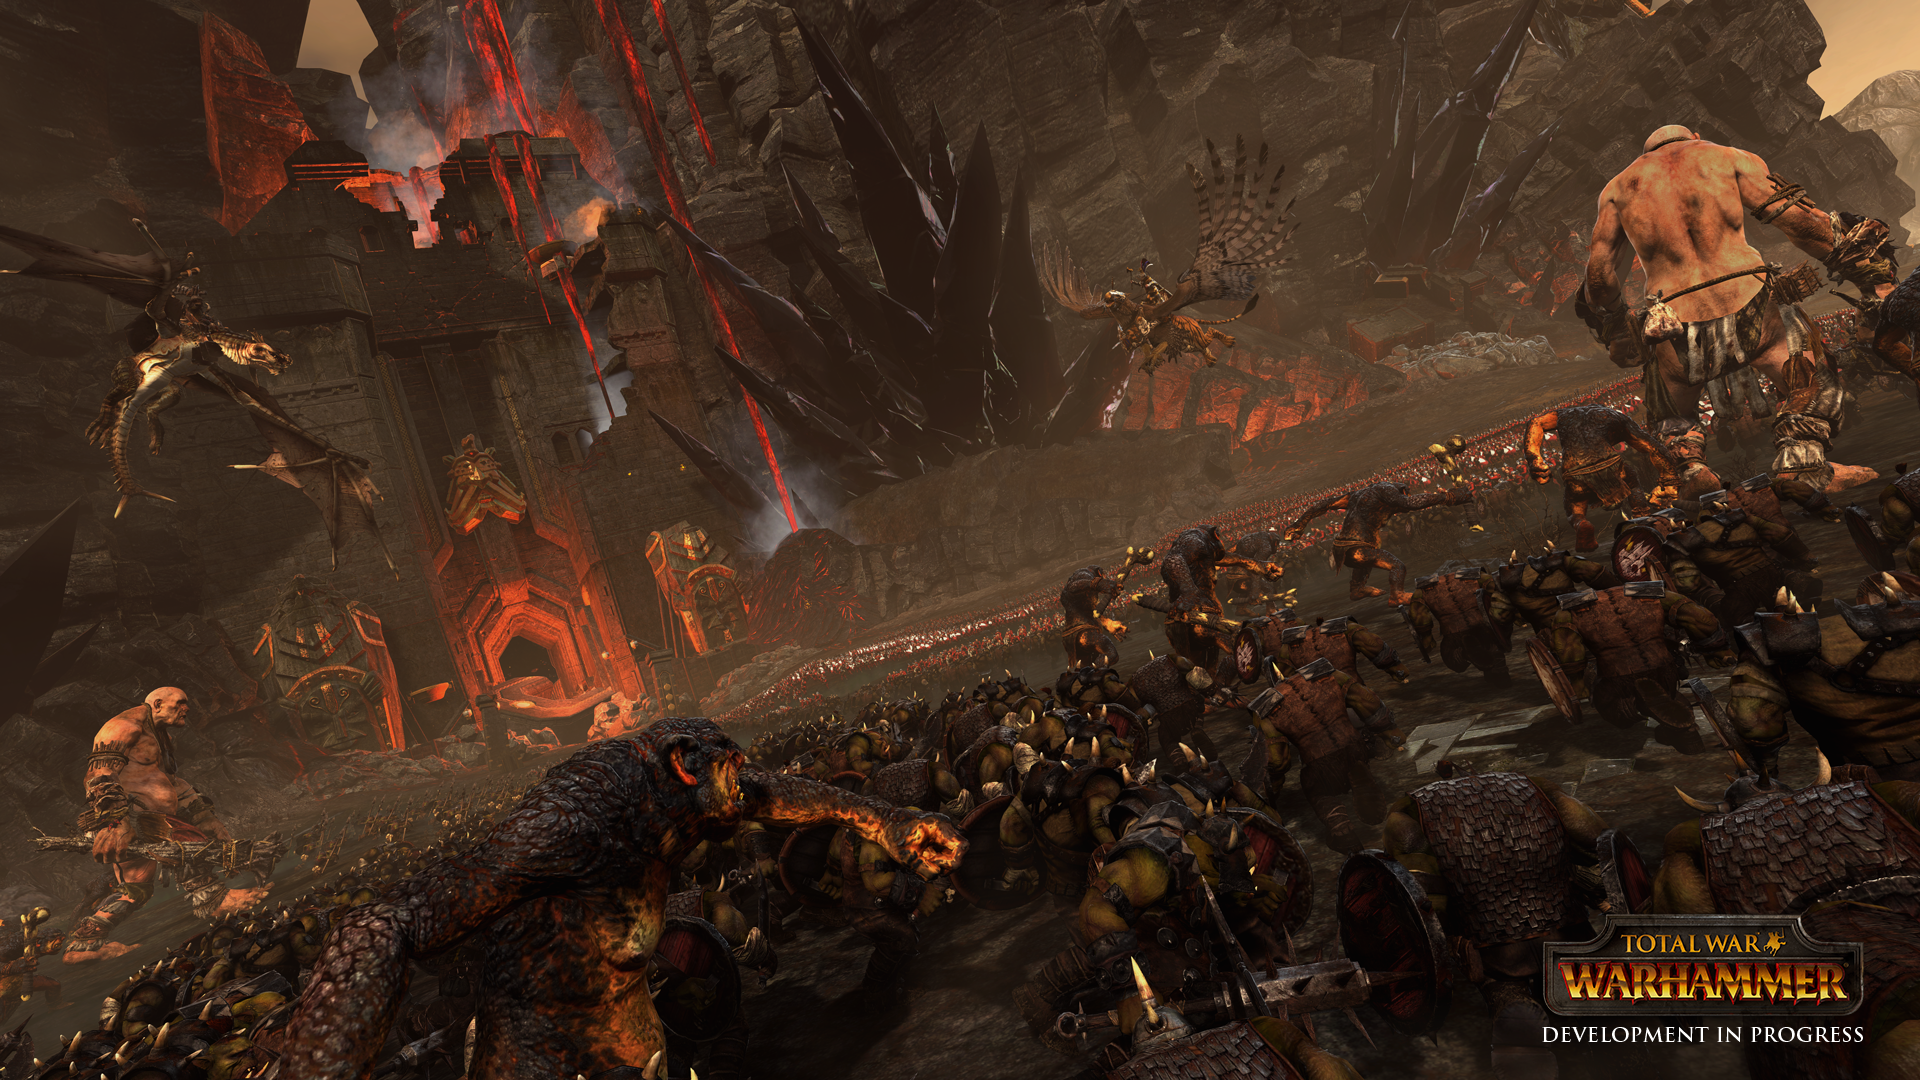 Warhammer Total War Wallpaper - Total War Warhammer Background , HD Wallpaper & Backgrounds